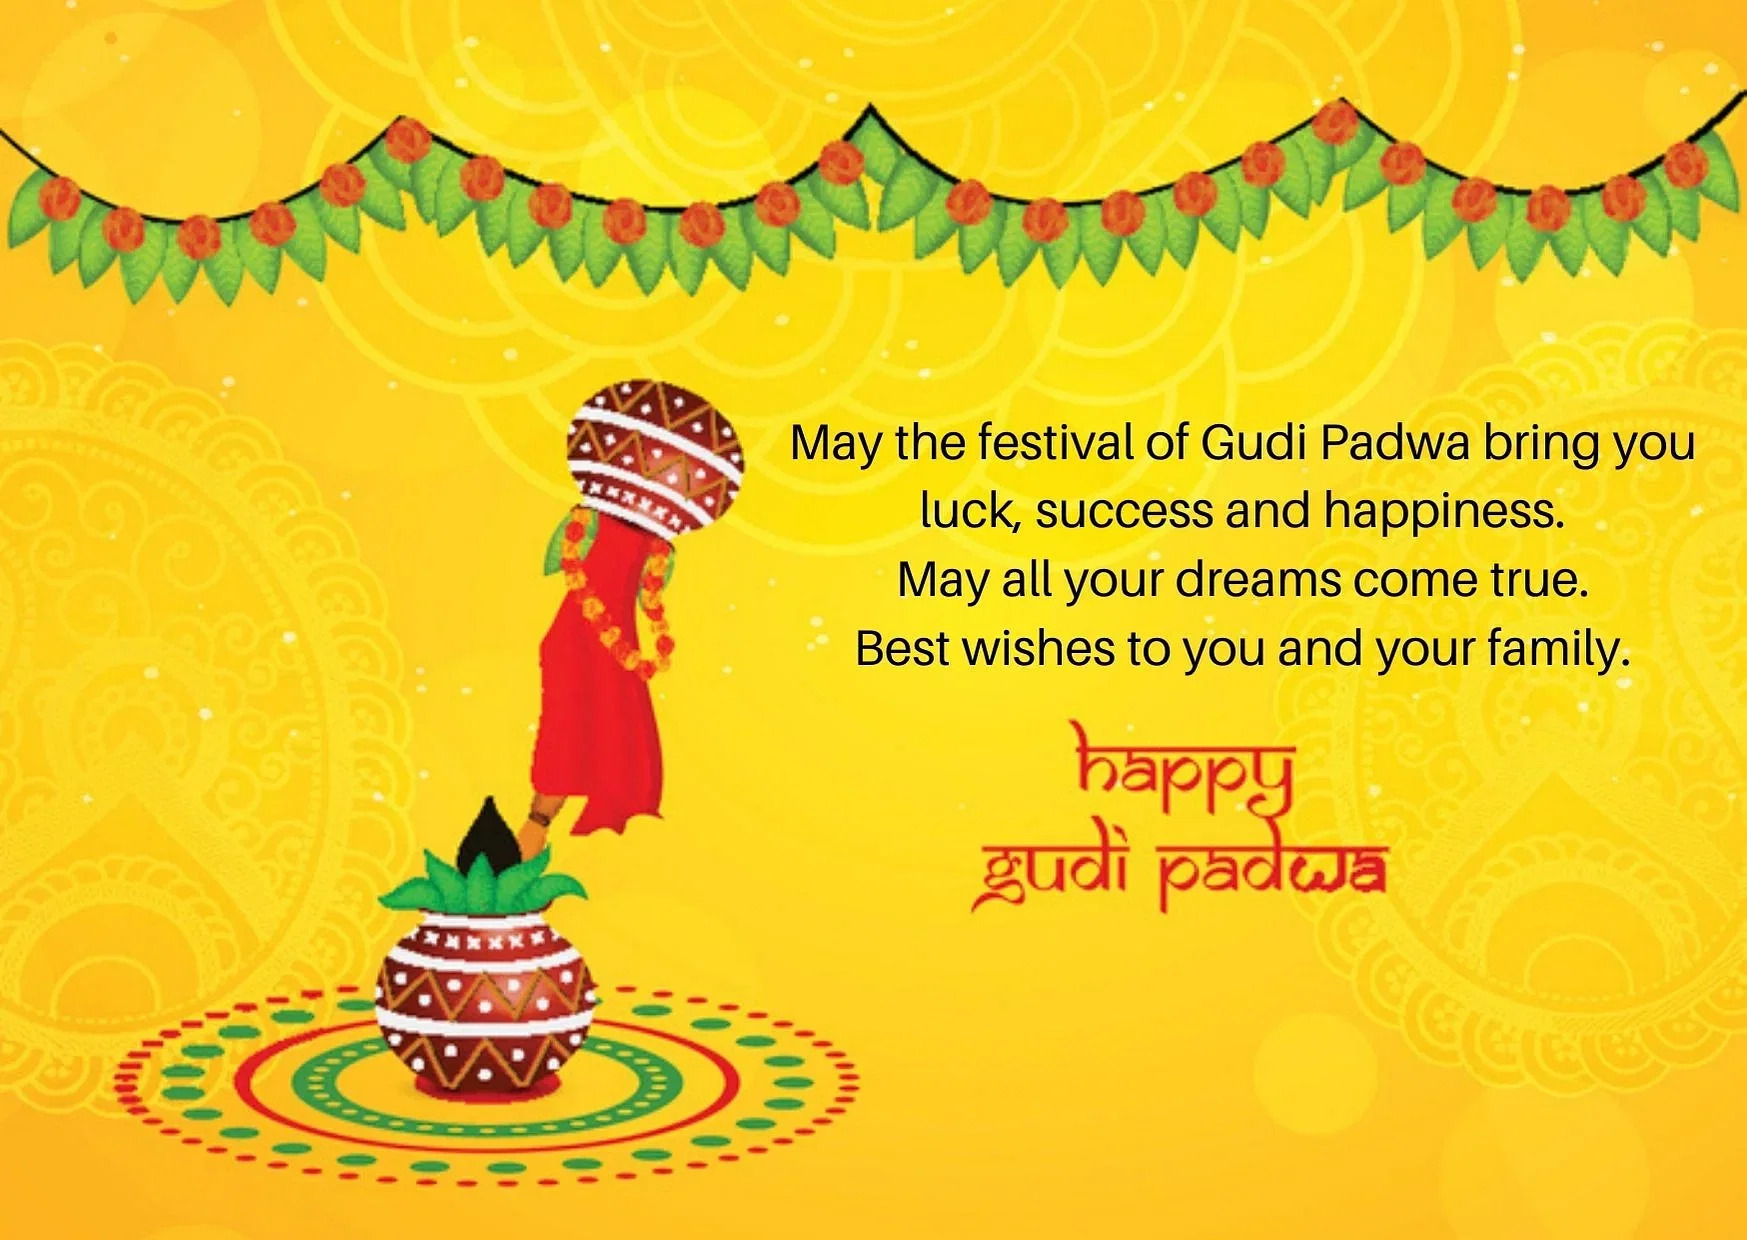 Happy Gudi Padwa